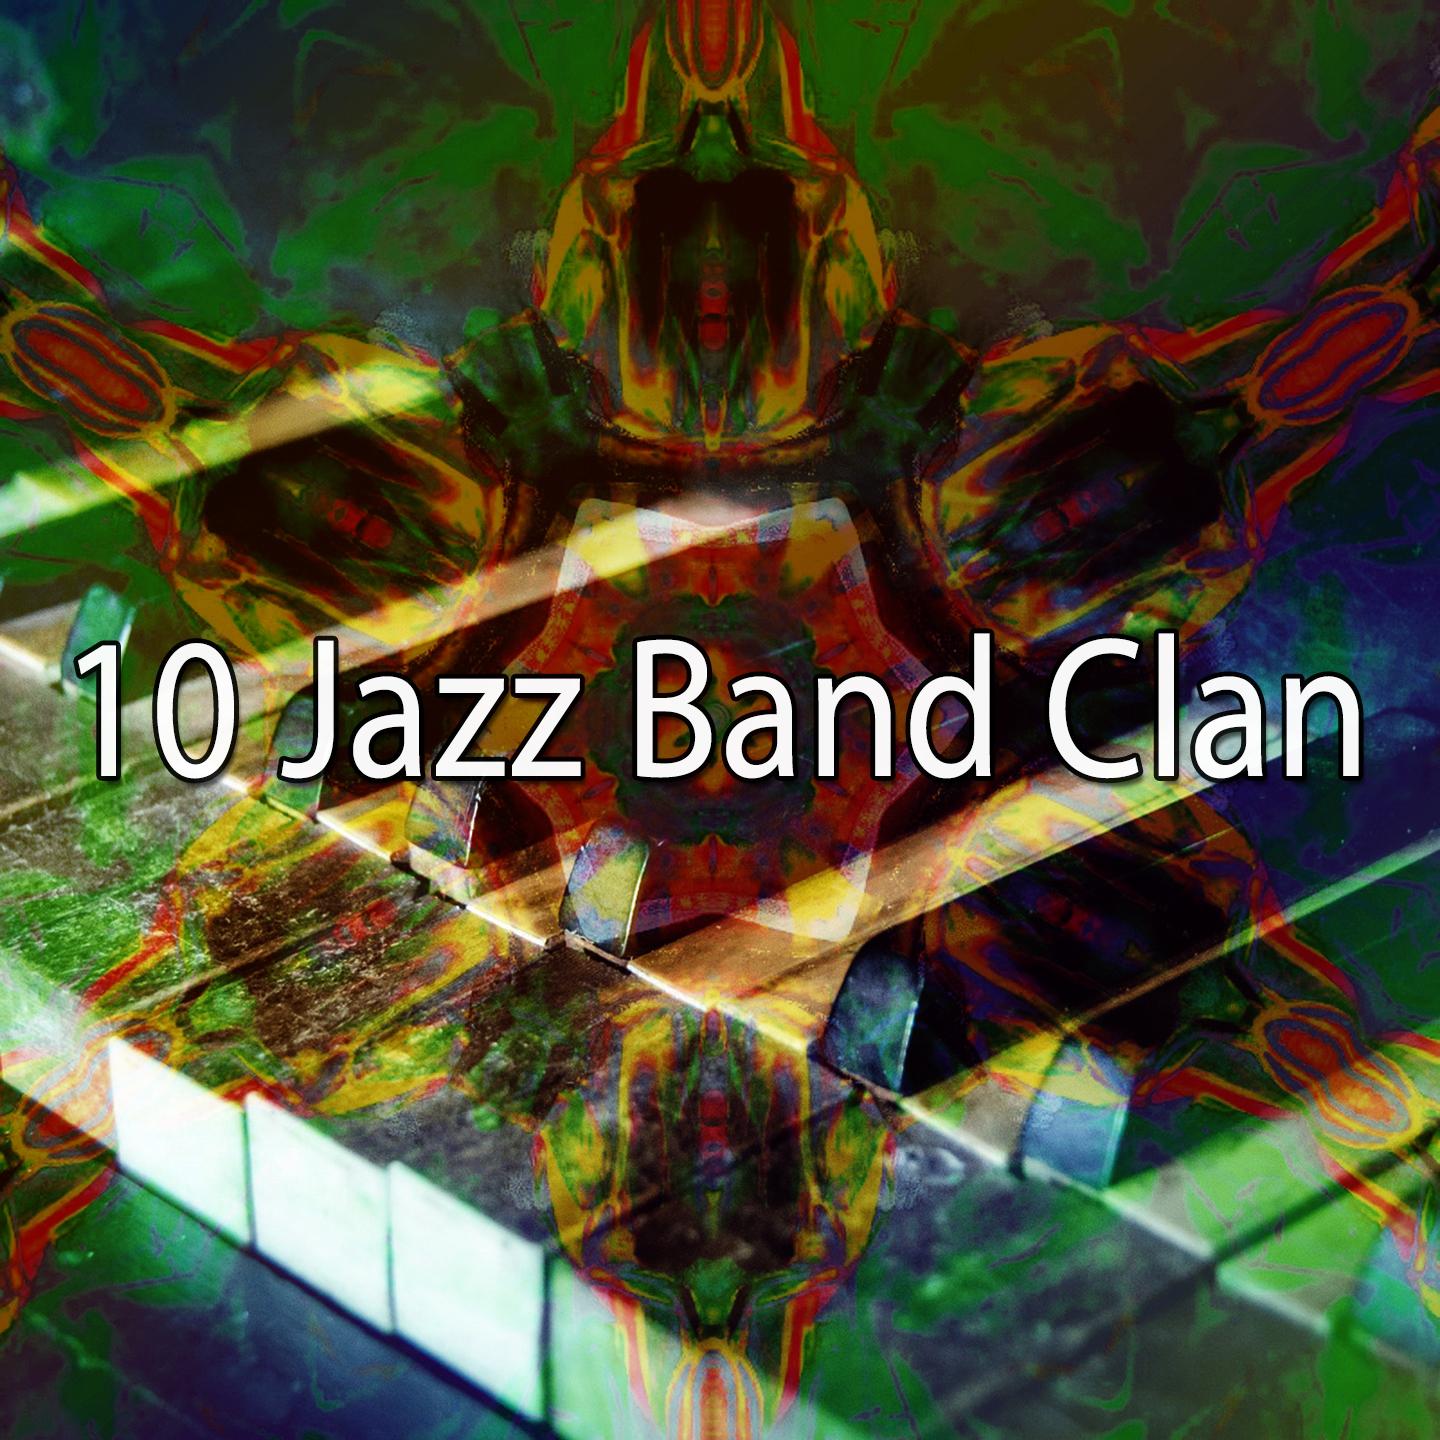 10 Jazz Band Clan